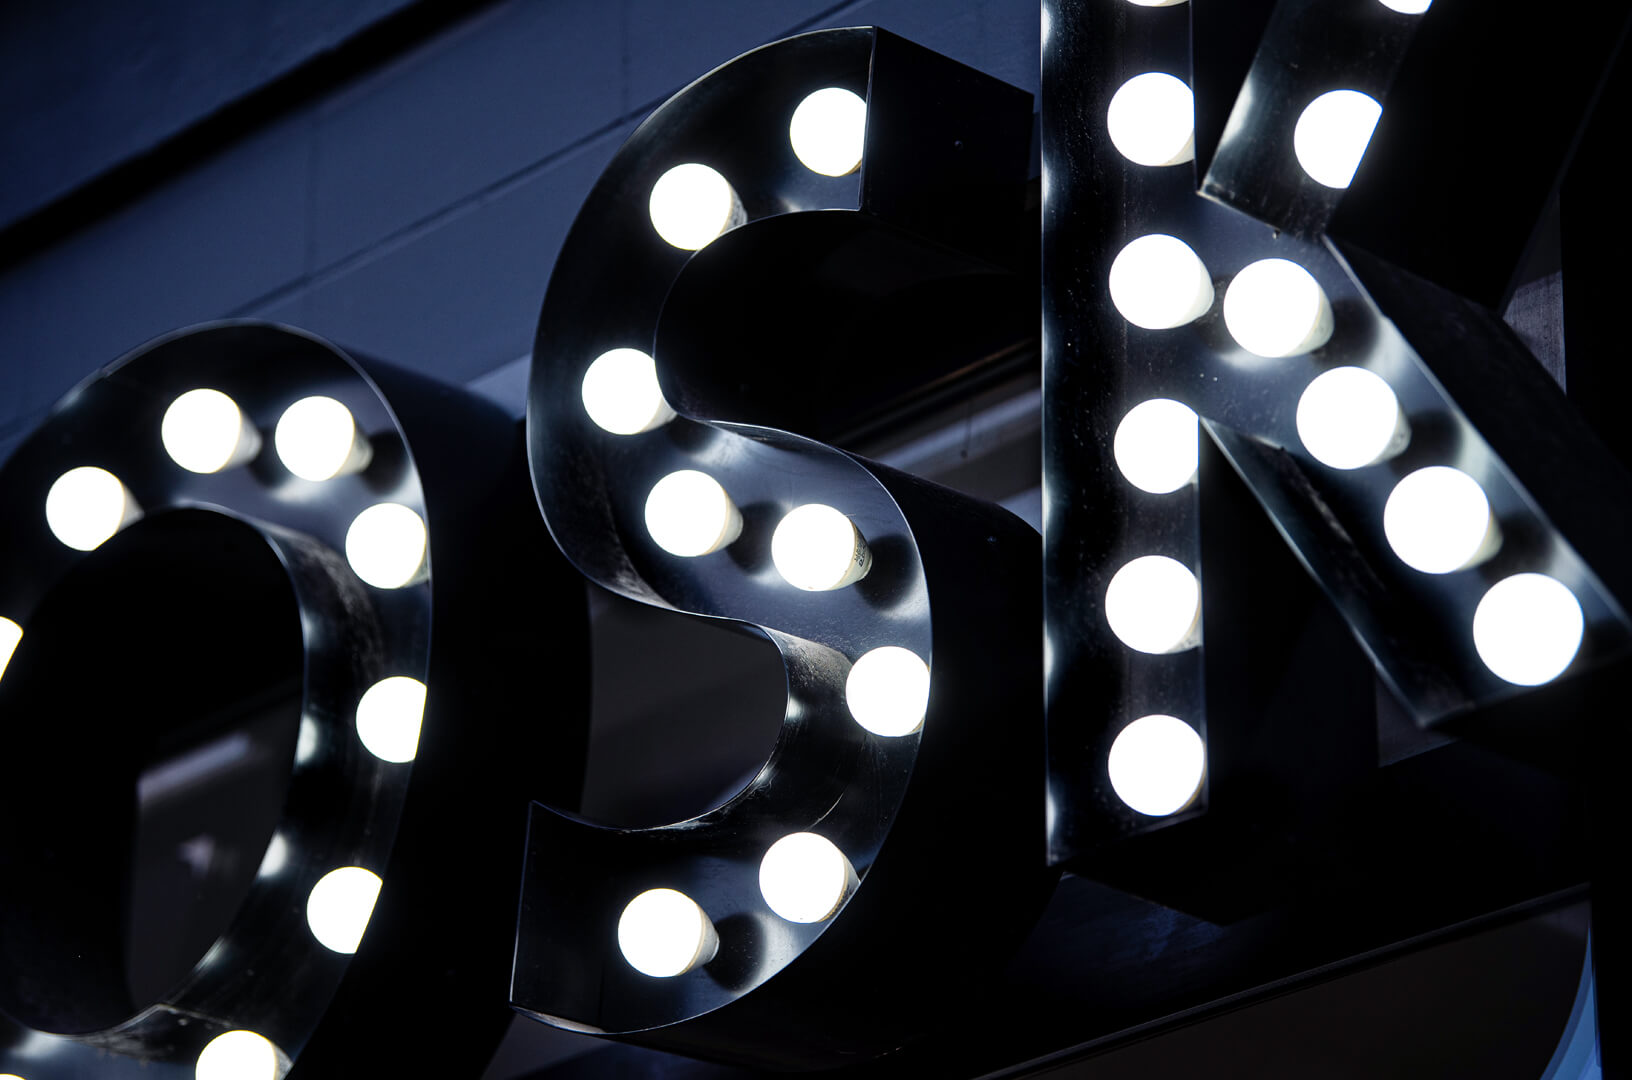 CERA - Lettere con lampadine che formano la parola WOSK, lampadine bianche incorporate in lettere nere